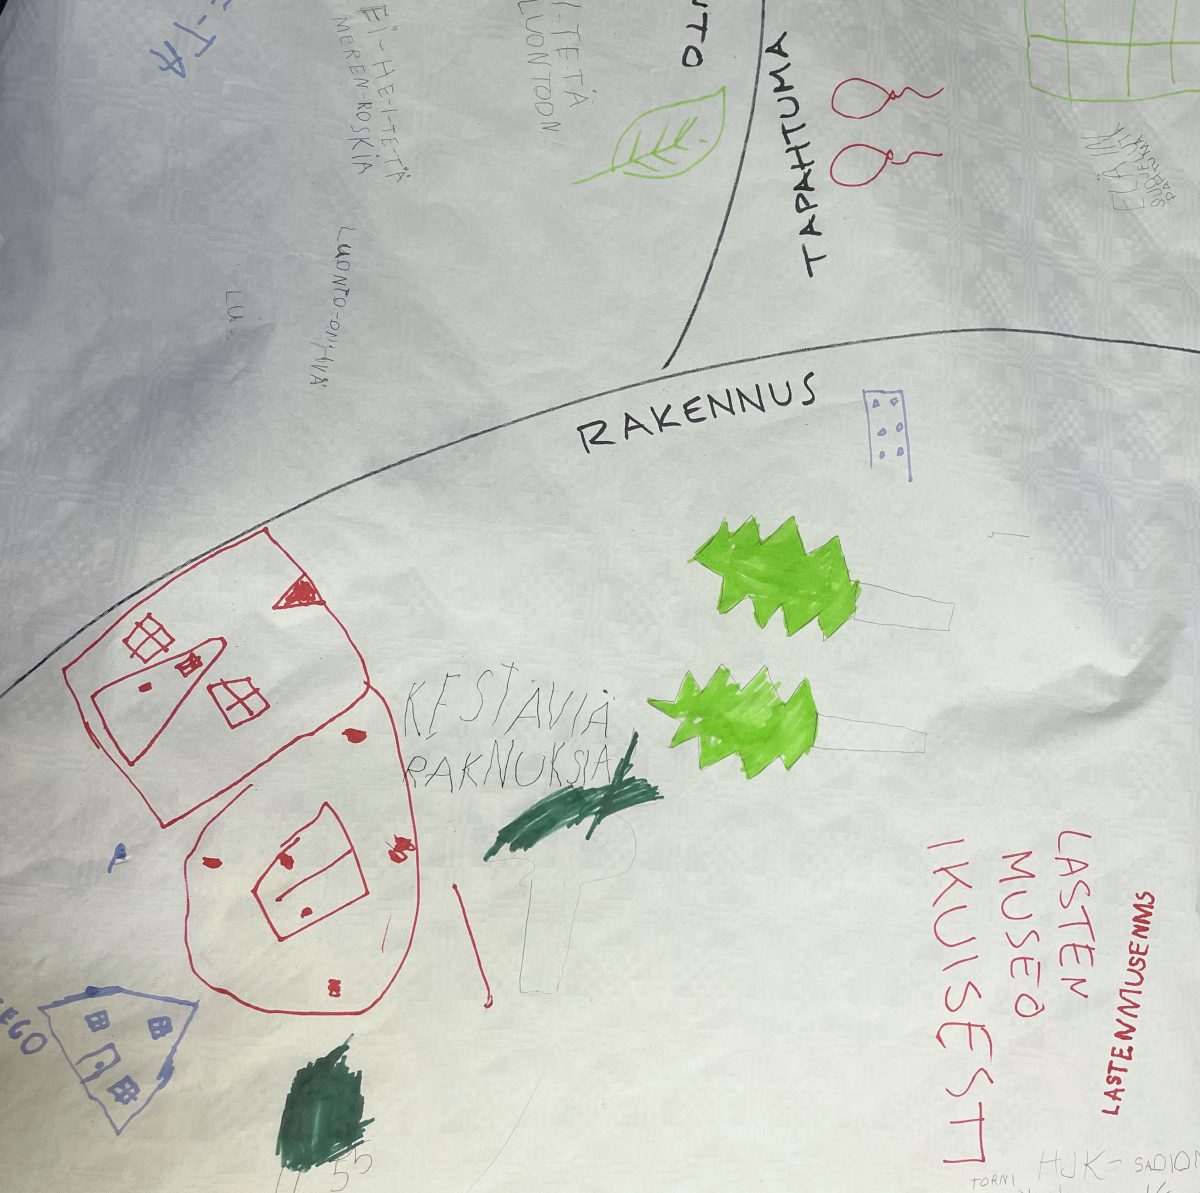 Lasten työpajassa tekemä kanvas, jossa on kirjoituksia ja piirrustuksia, jotka liittyvät Helsingin kaupungin tulevaisuuteen. Keskellä komeilee teksti: kestäviä rakennuksia.